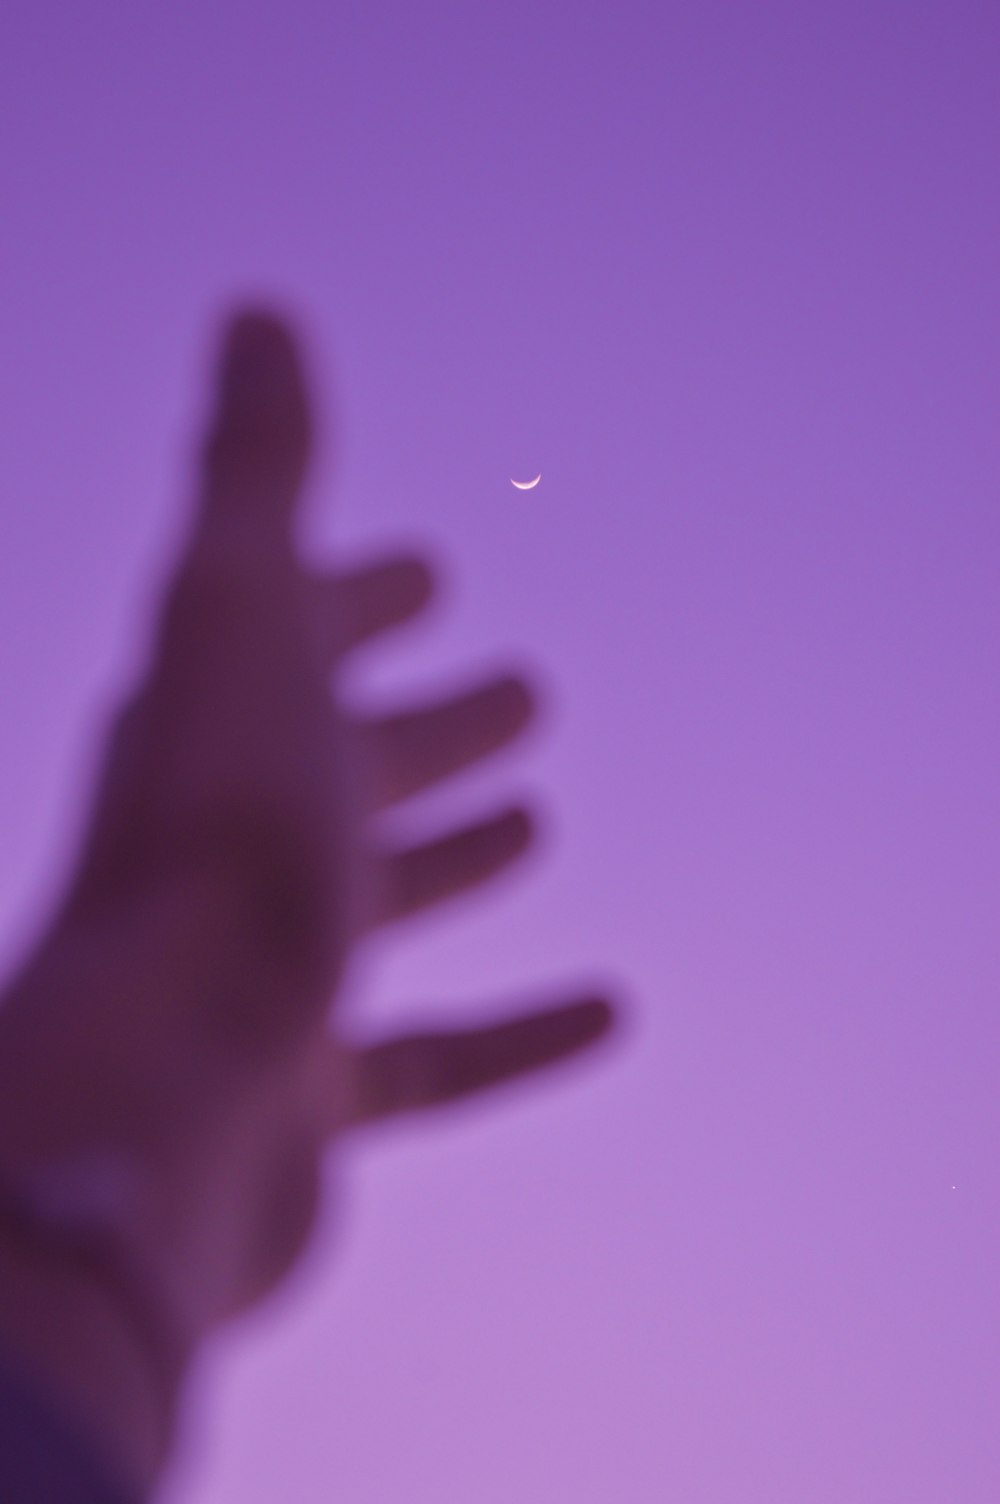 Una foto sfocata della mano di una persona con una mezza luna nel